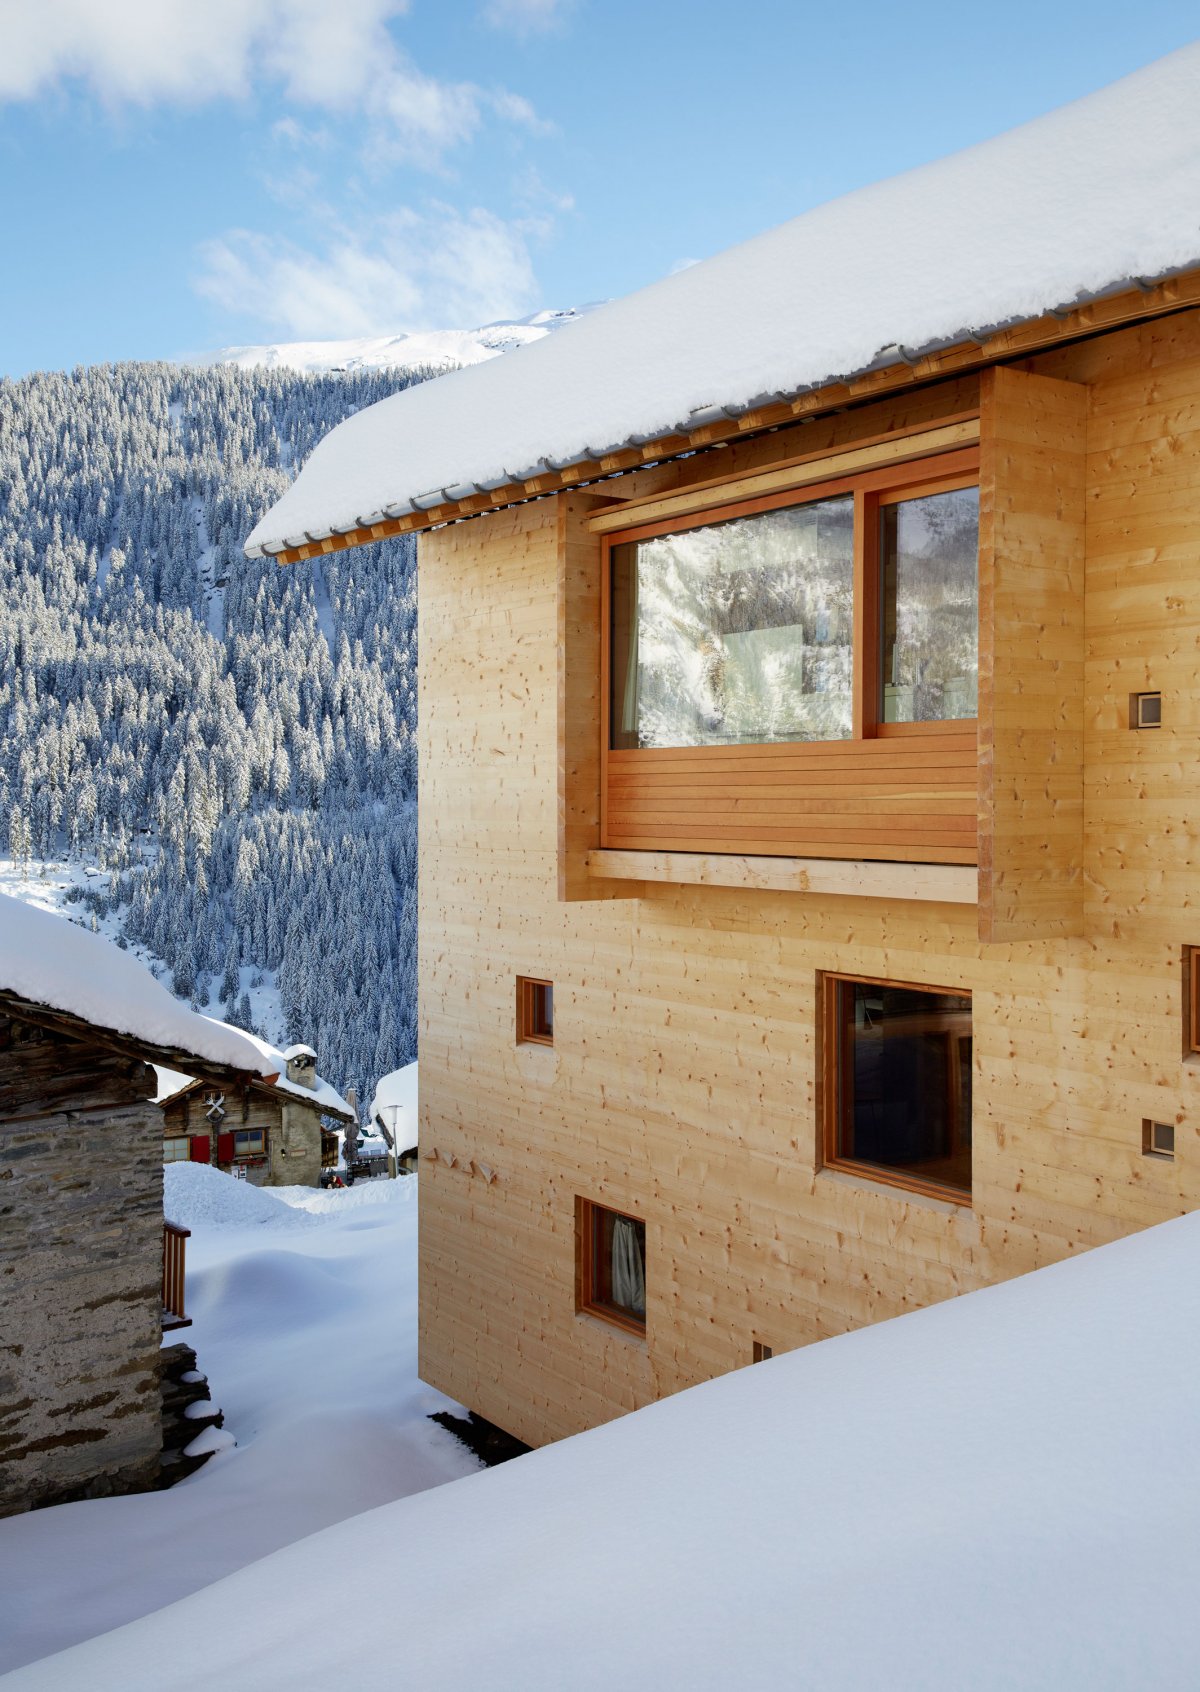 瑞士木屋建筑风格图片